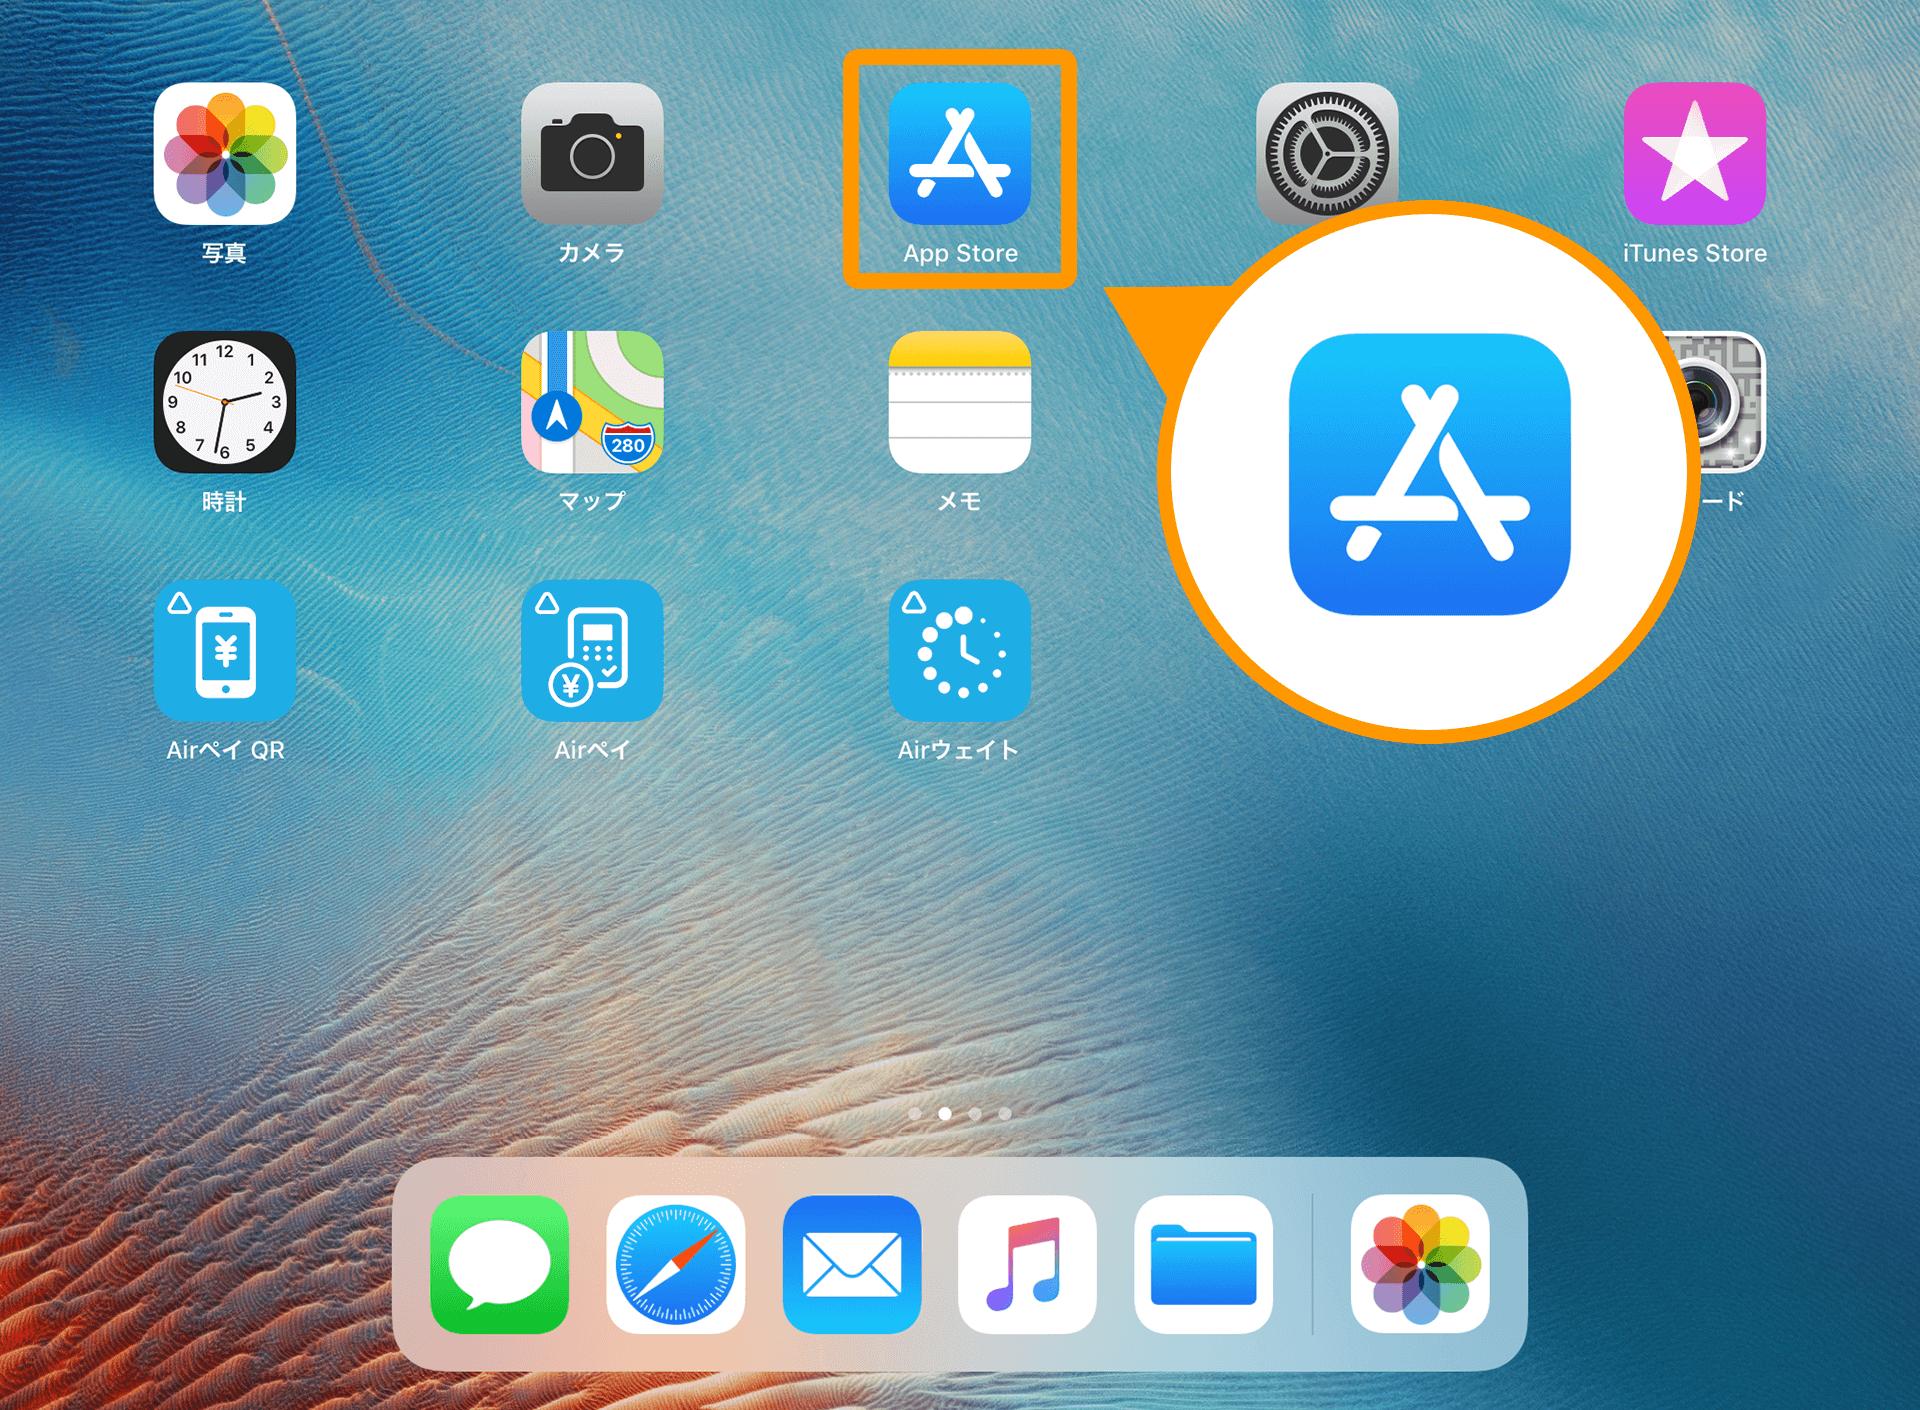 iPadホーム画面 App Store